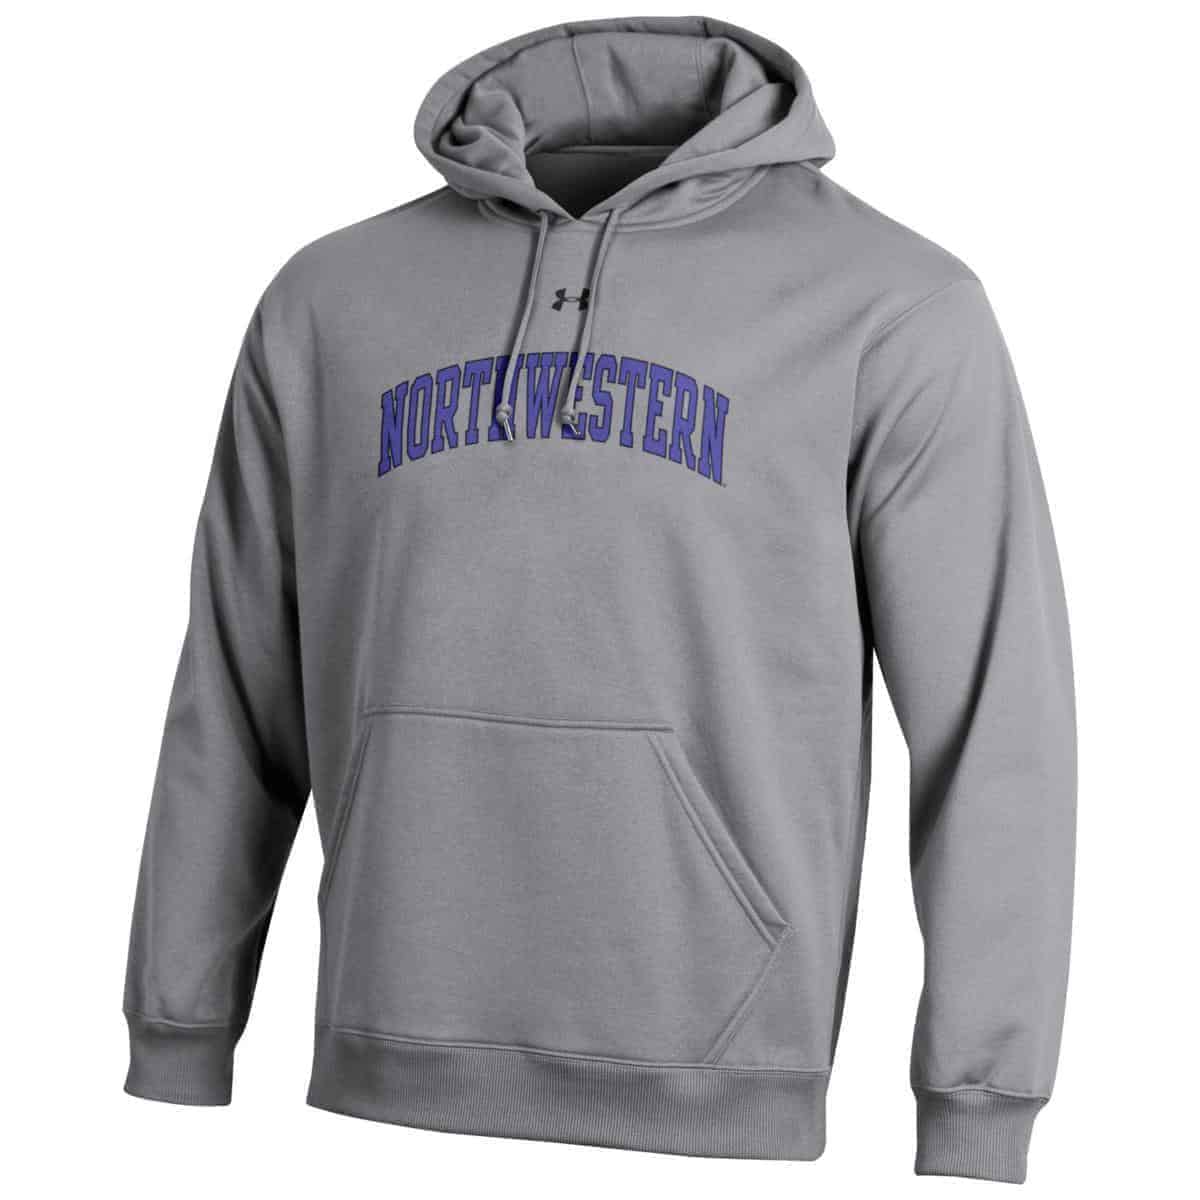 Northwestern University Wildcats Under Armour Grey Fleece Hood with ...